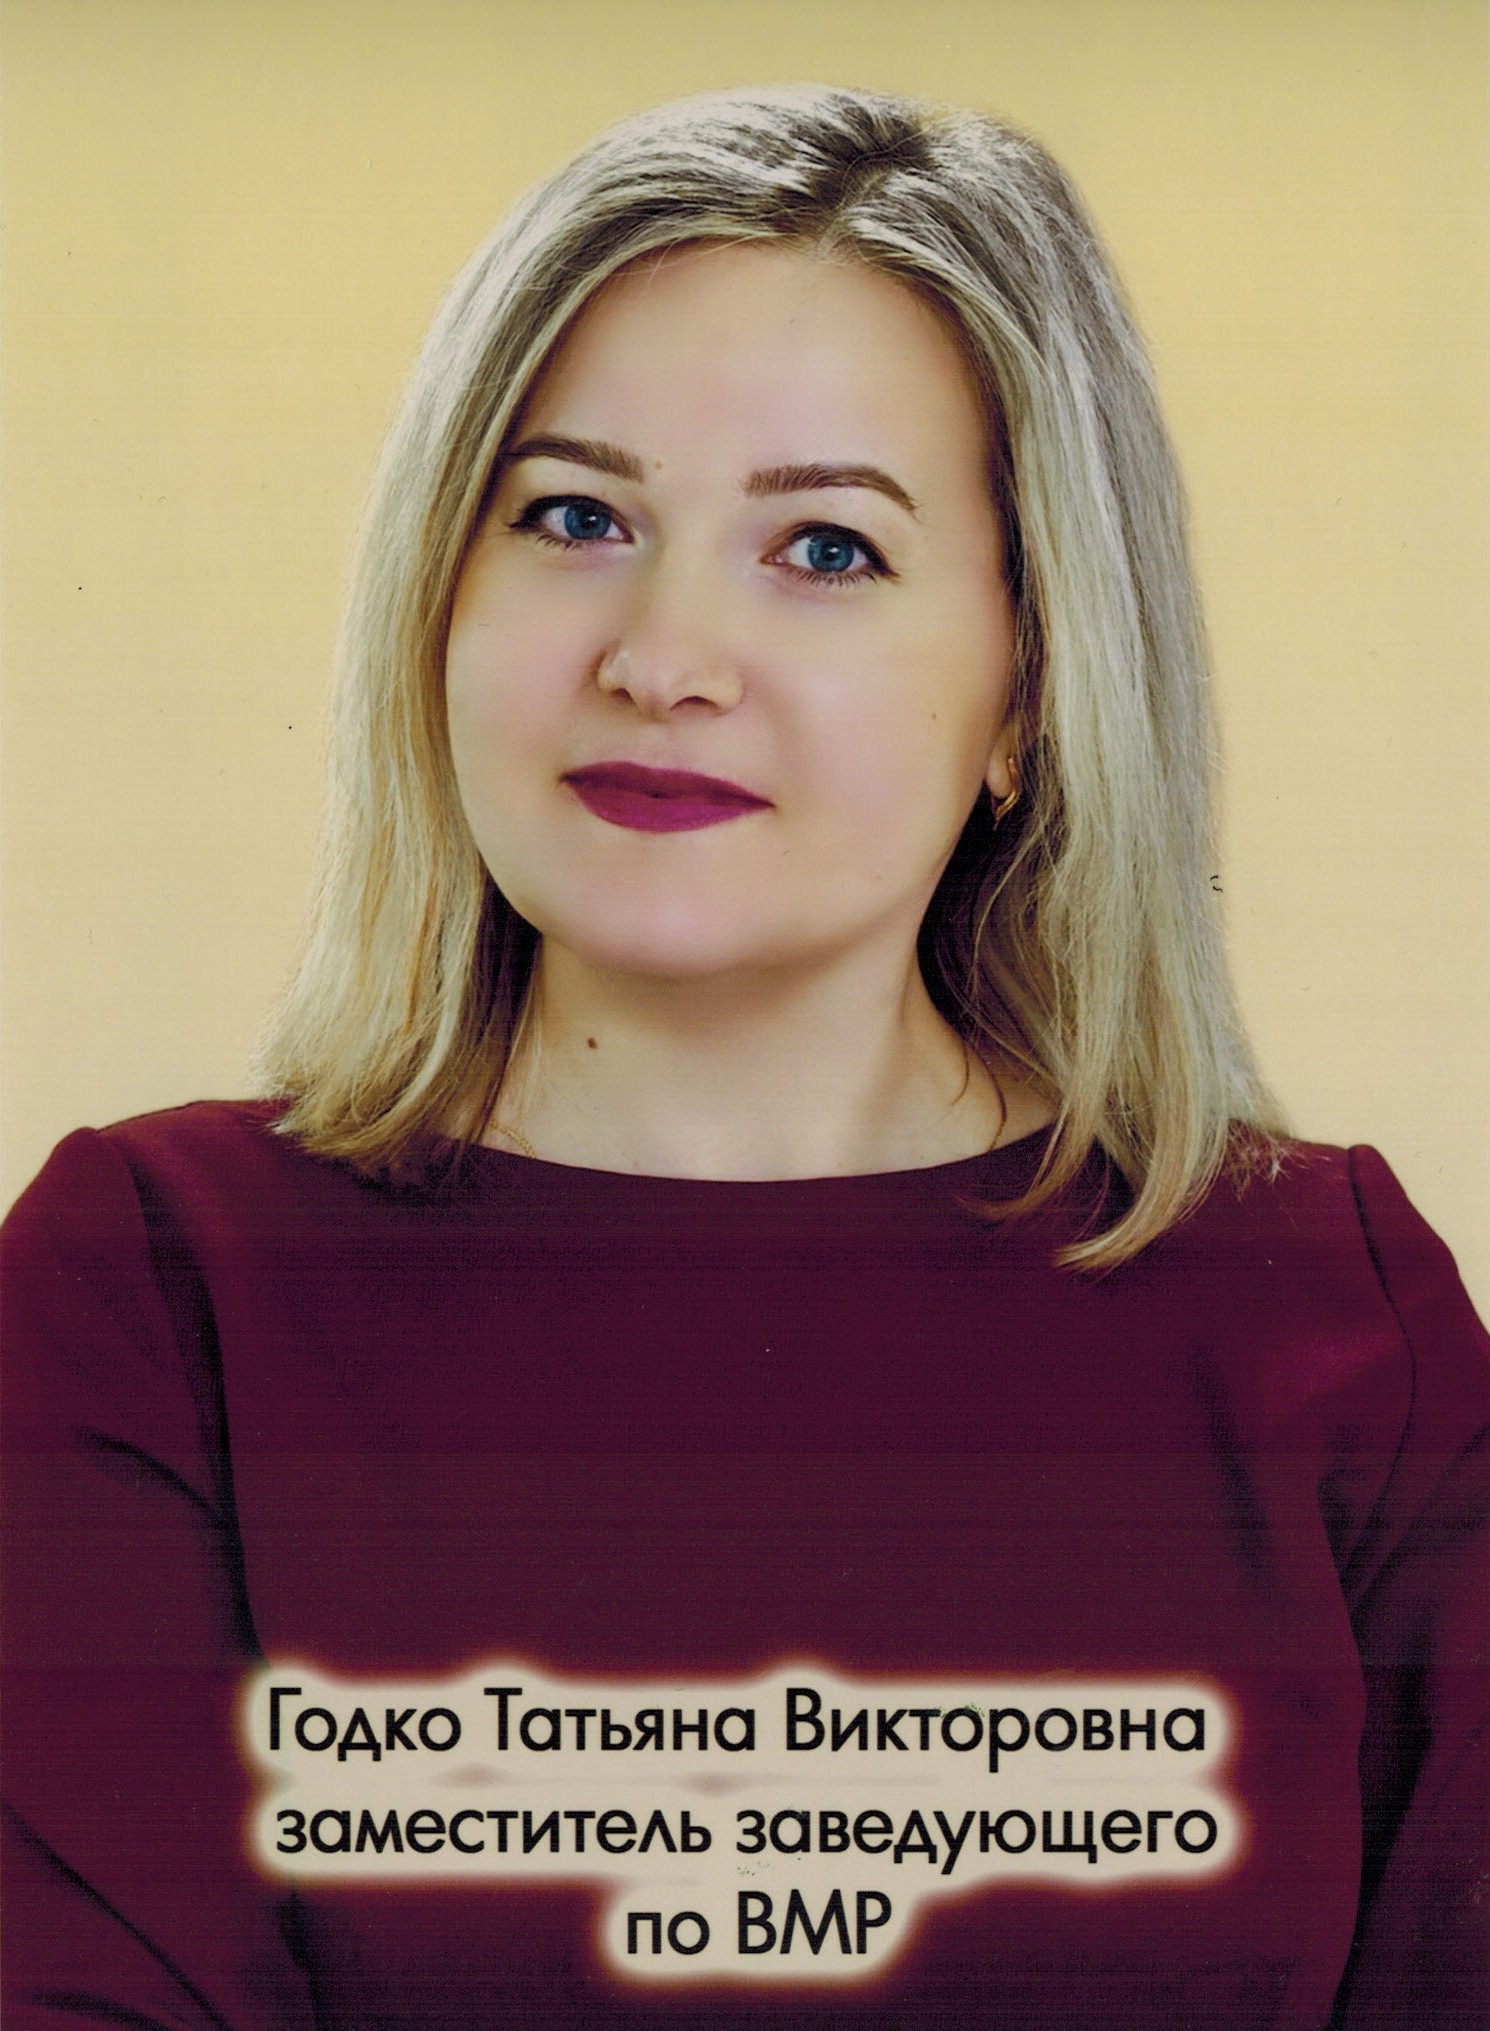 Заместитель заведующего по ВМР Годко Татьяна Викторовна.